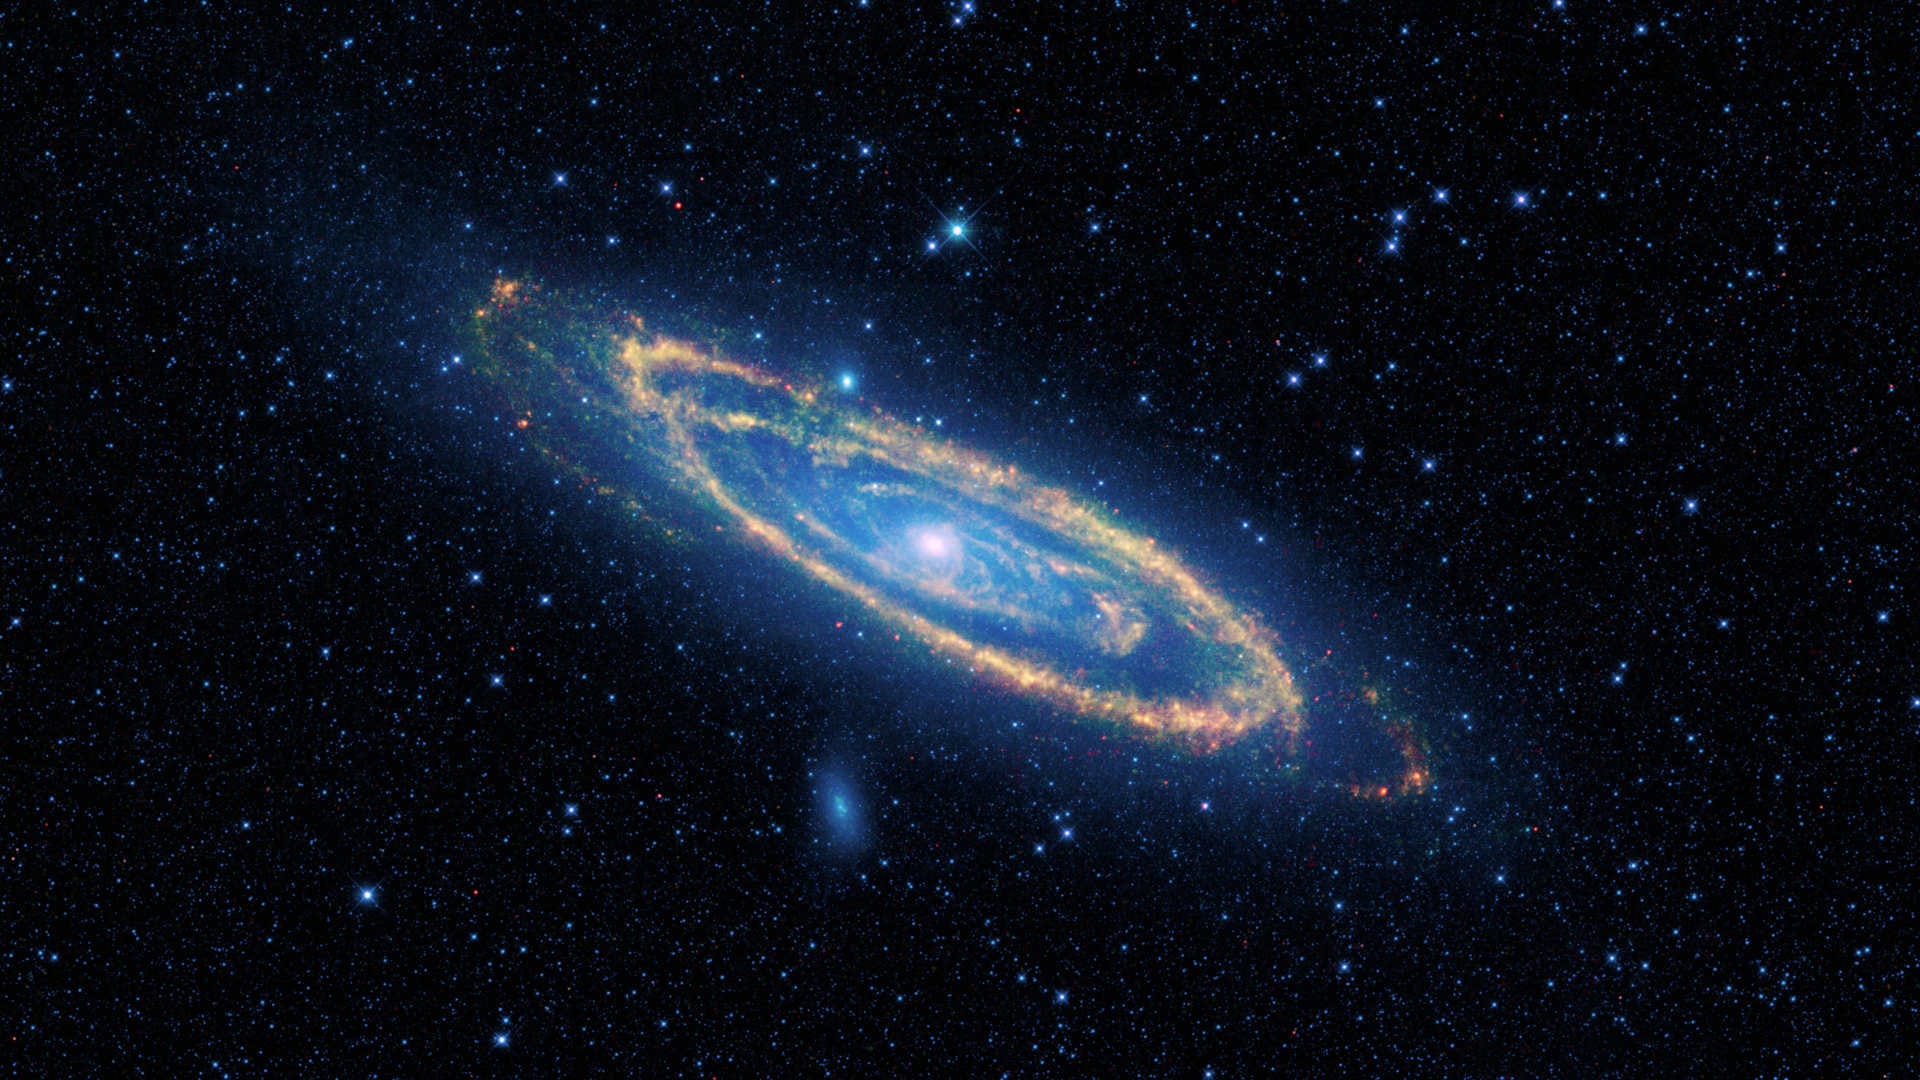 La Galaxia de Andrómeda (M31) – Observación de la galaxia gigante en las noches sin luna